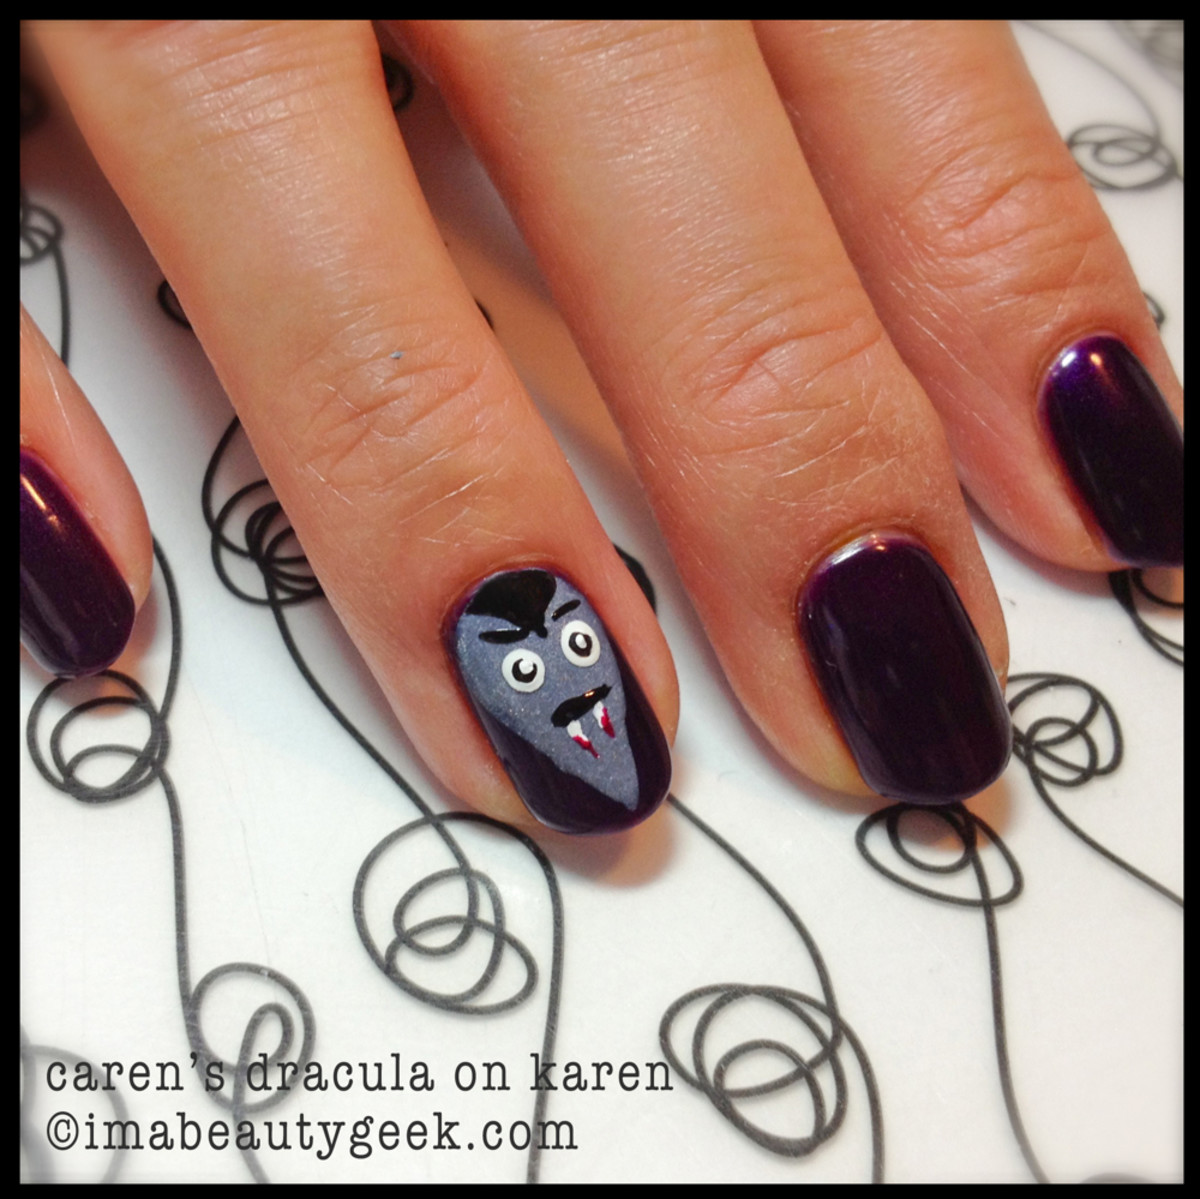 Dracula nails